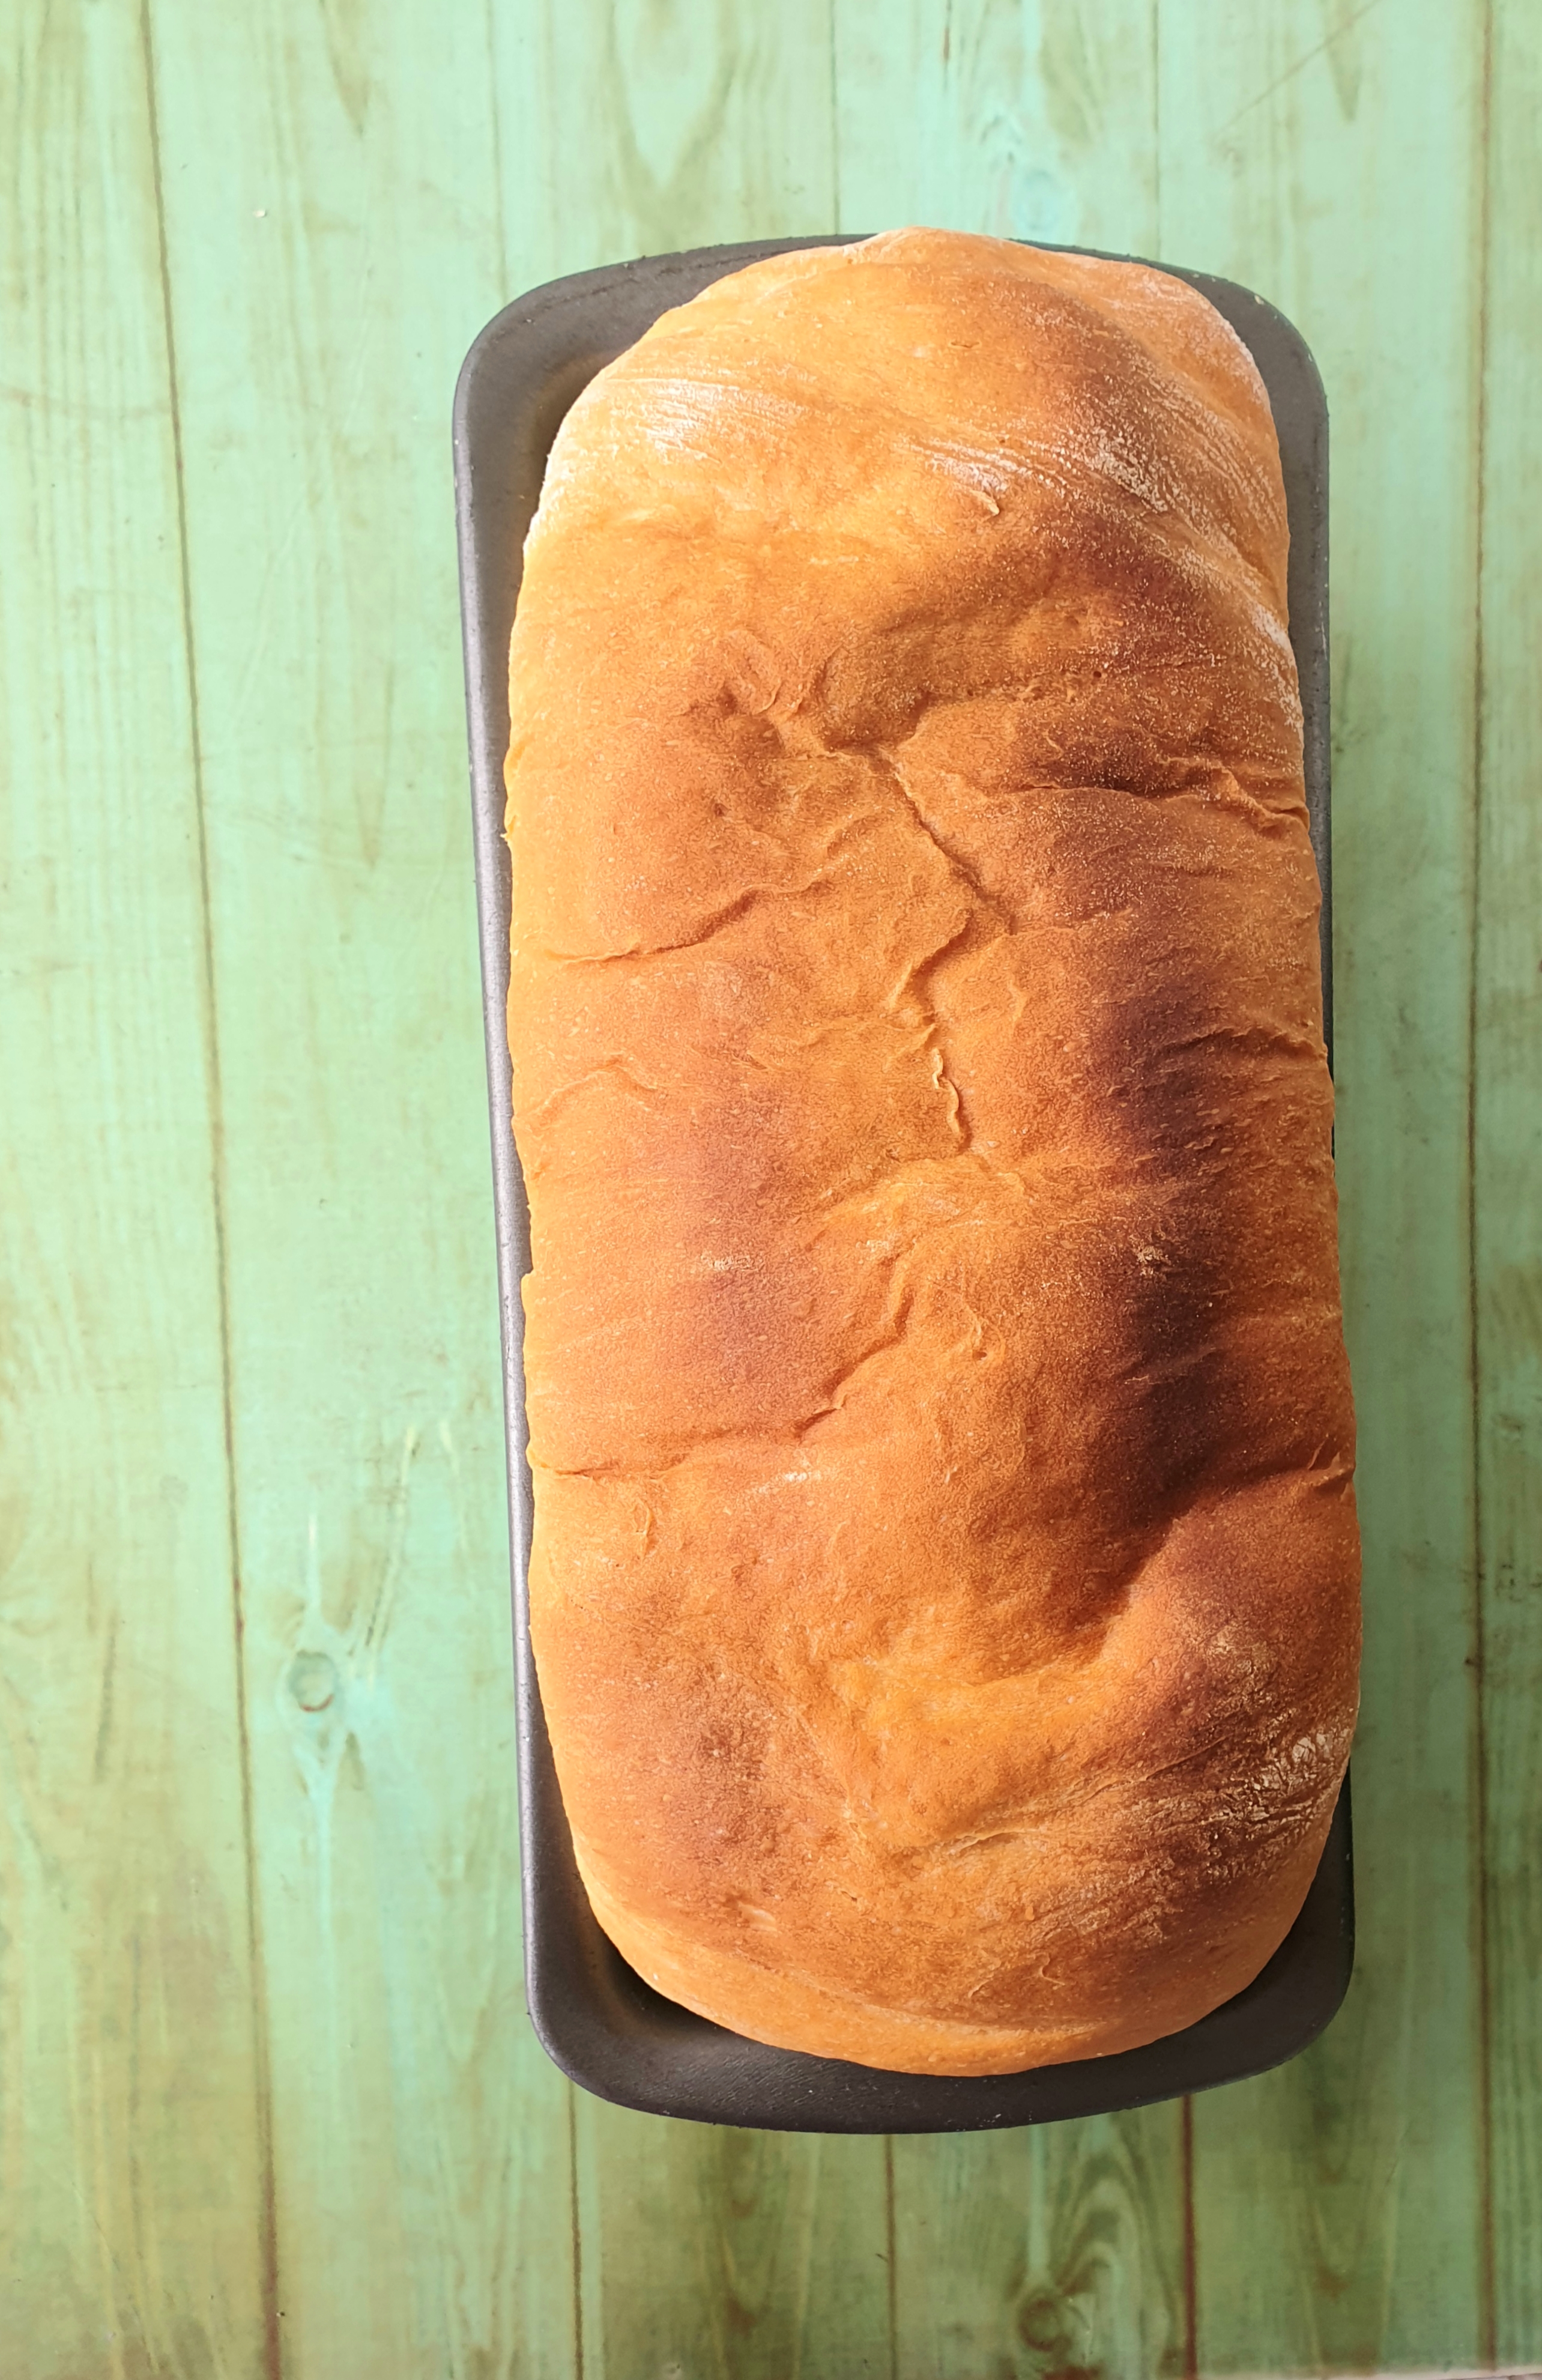 easy sandwich bread loaf